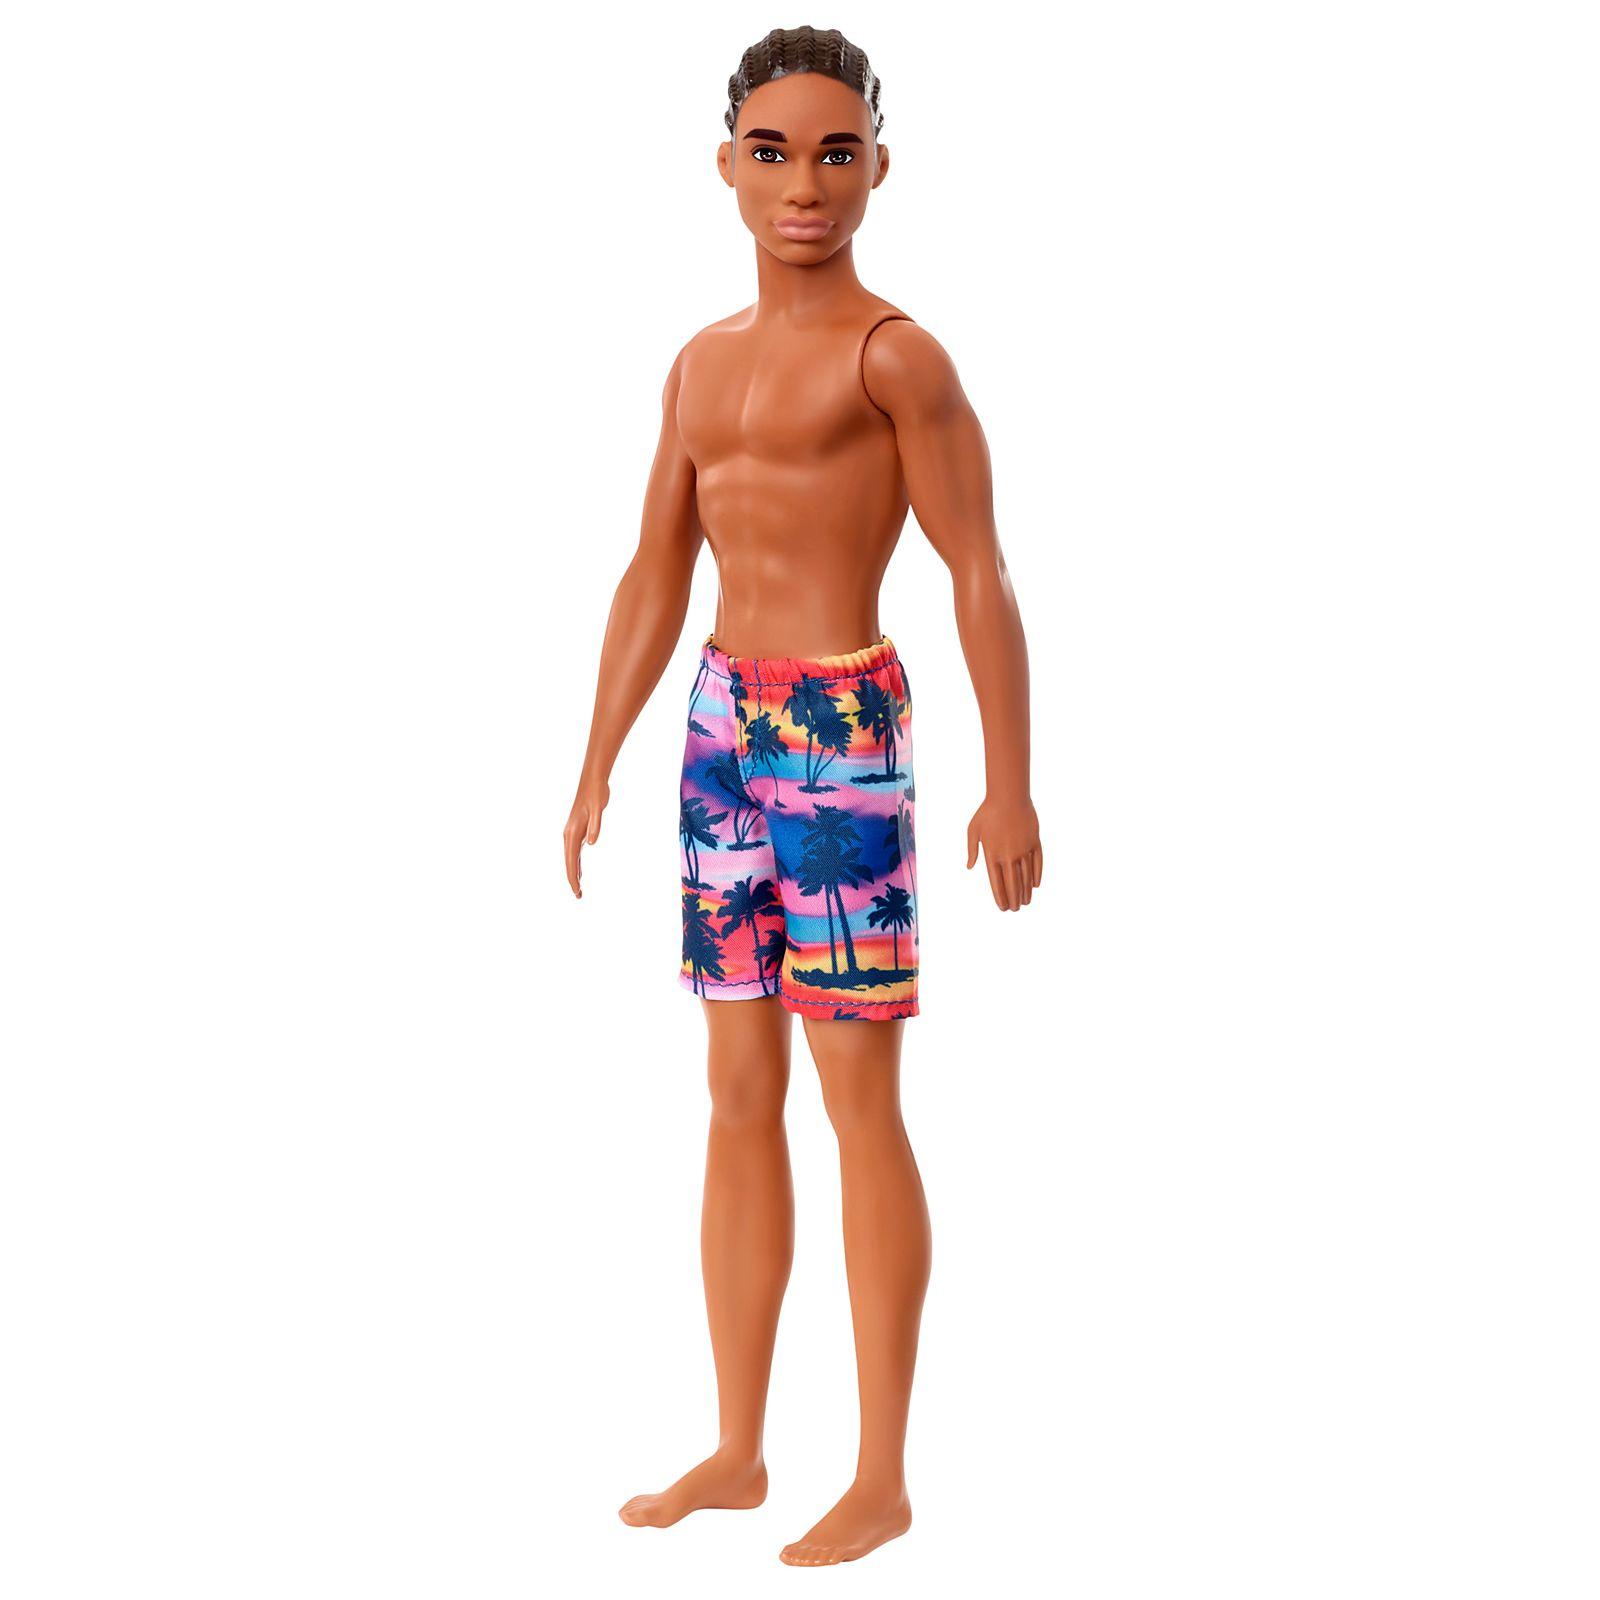 Barbie Beach Ken Doll Assortment8